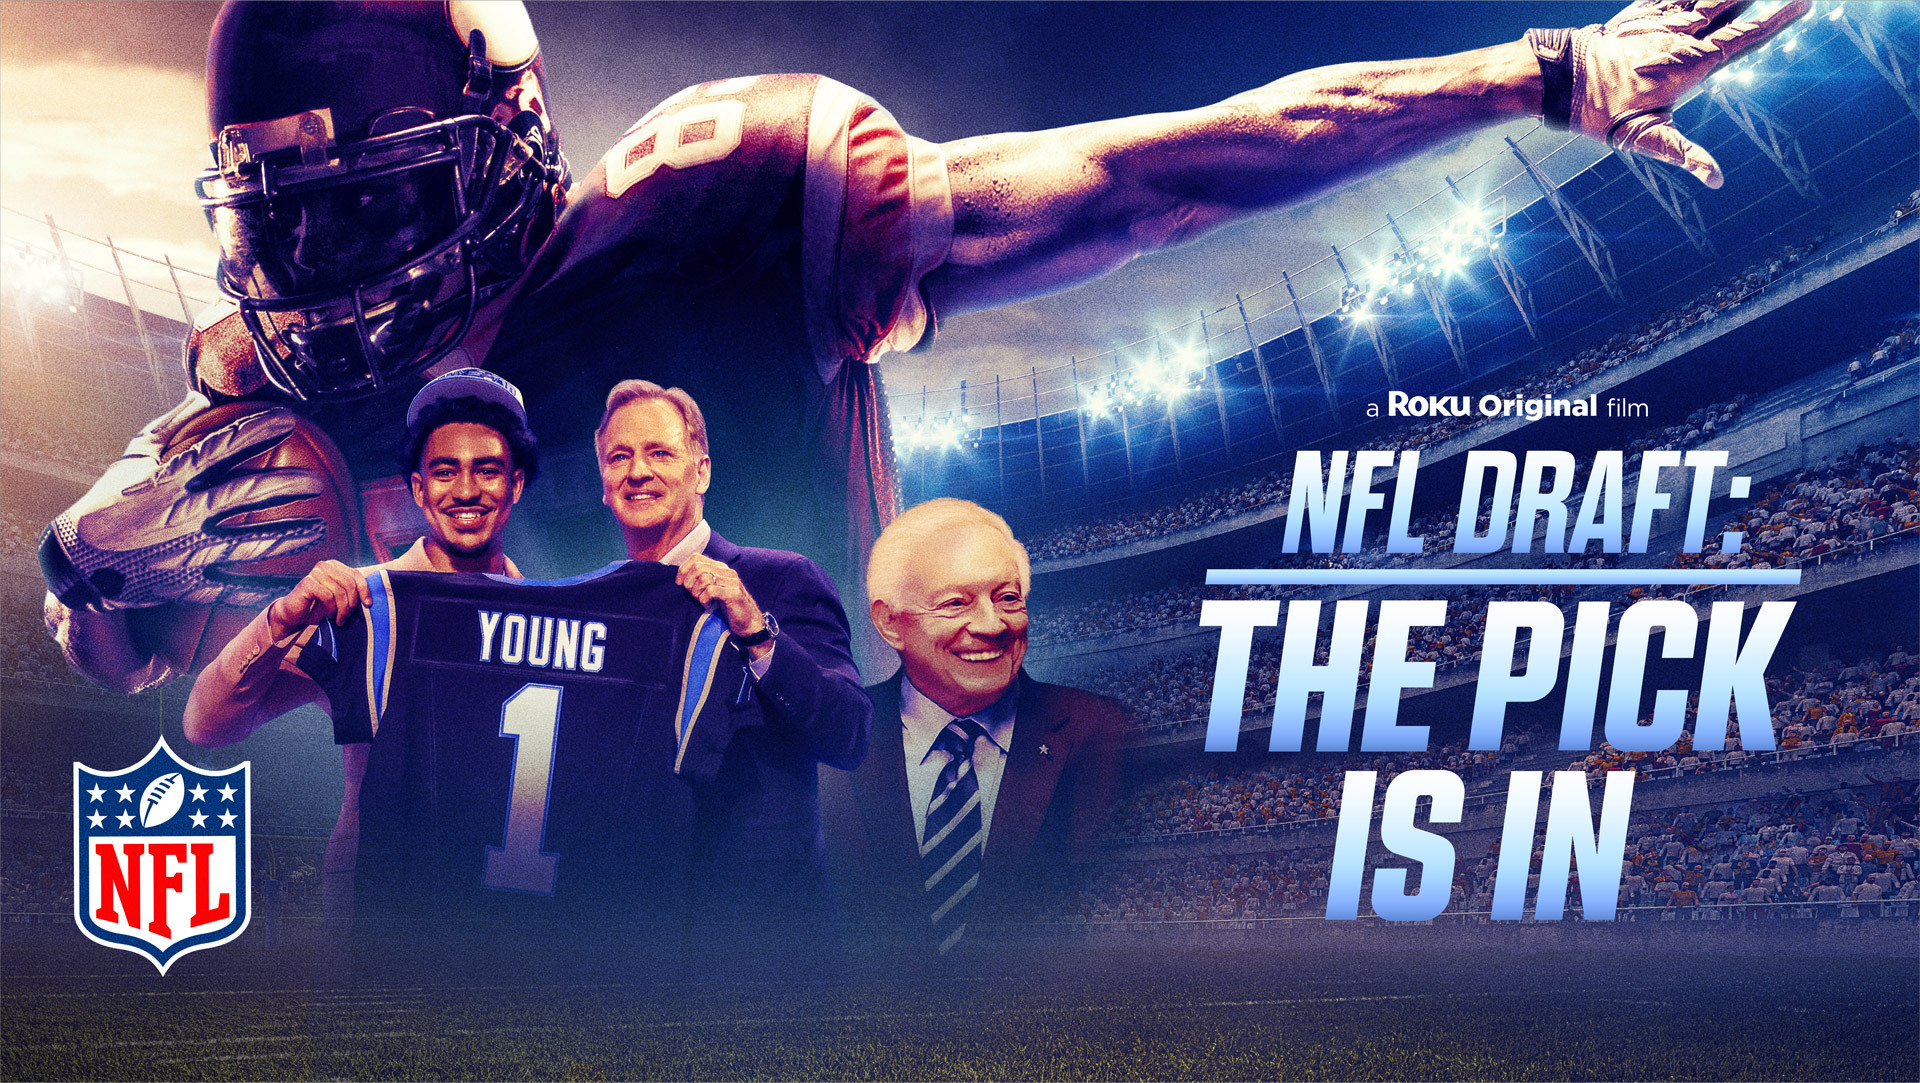 Roku’s ‘NFL Draft’ Documentary Scores Big With Roku Channel